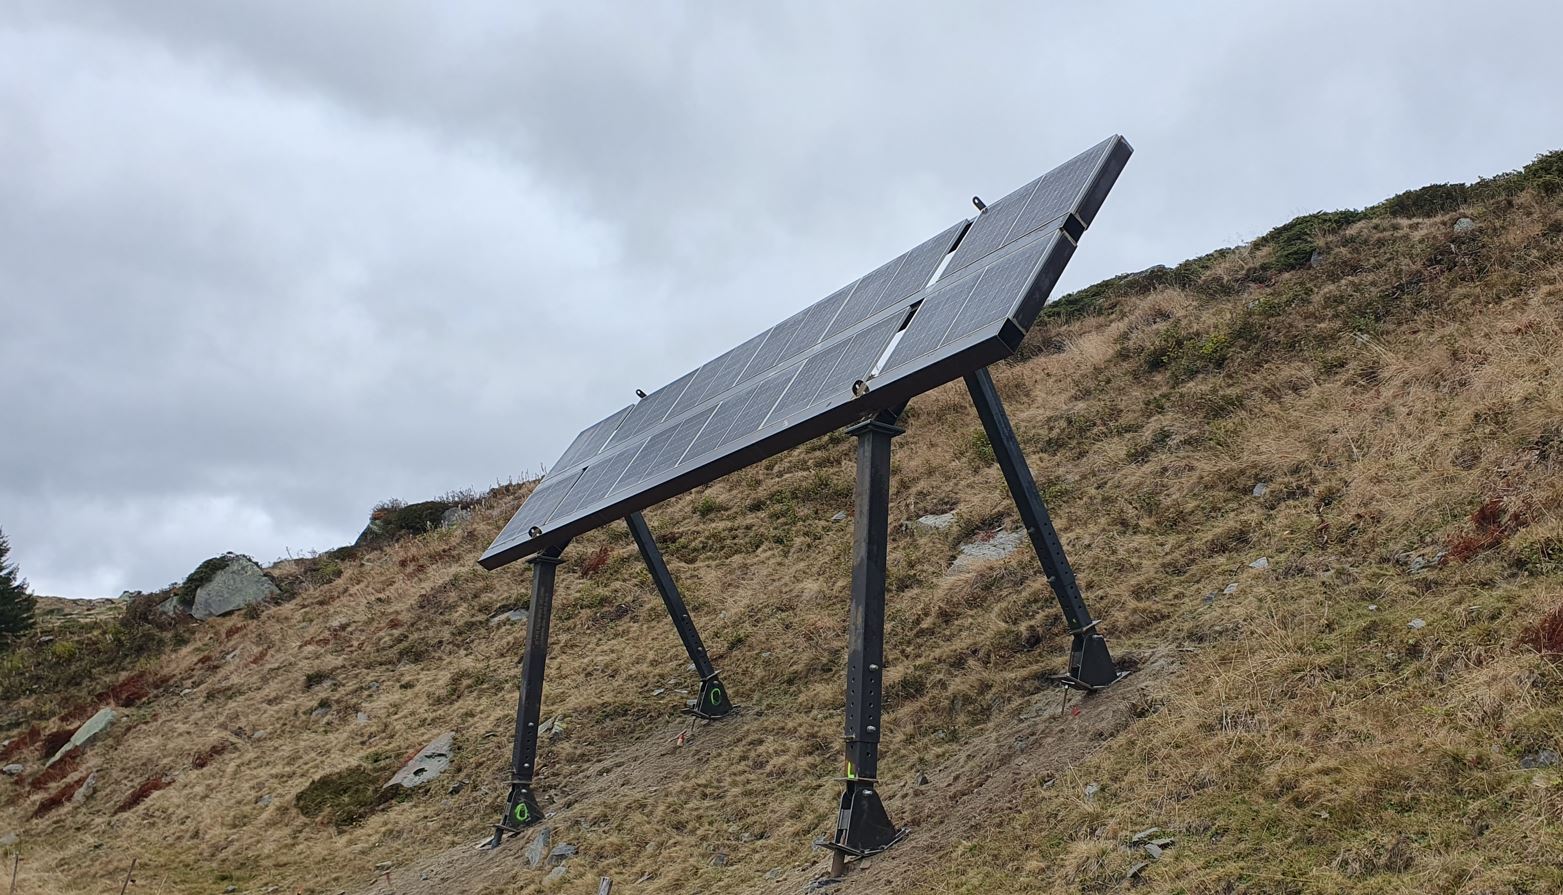 Testanlage in Tujetsch beim Solarprojekt NalpSolar - Solche Anlagen sollen auch im Projekt Glarus Süd Solar eingesetzt werden